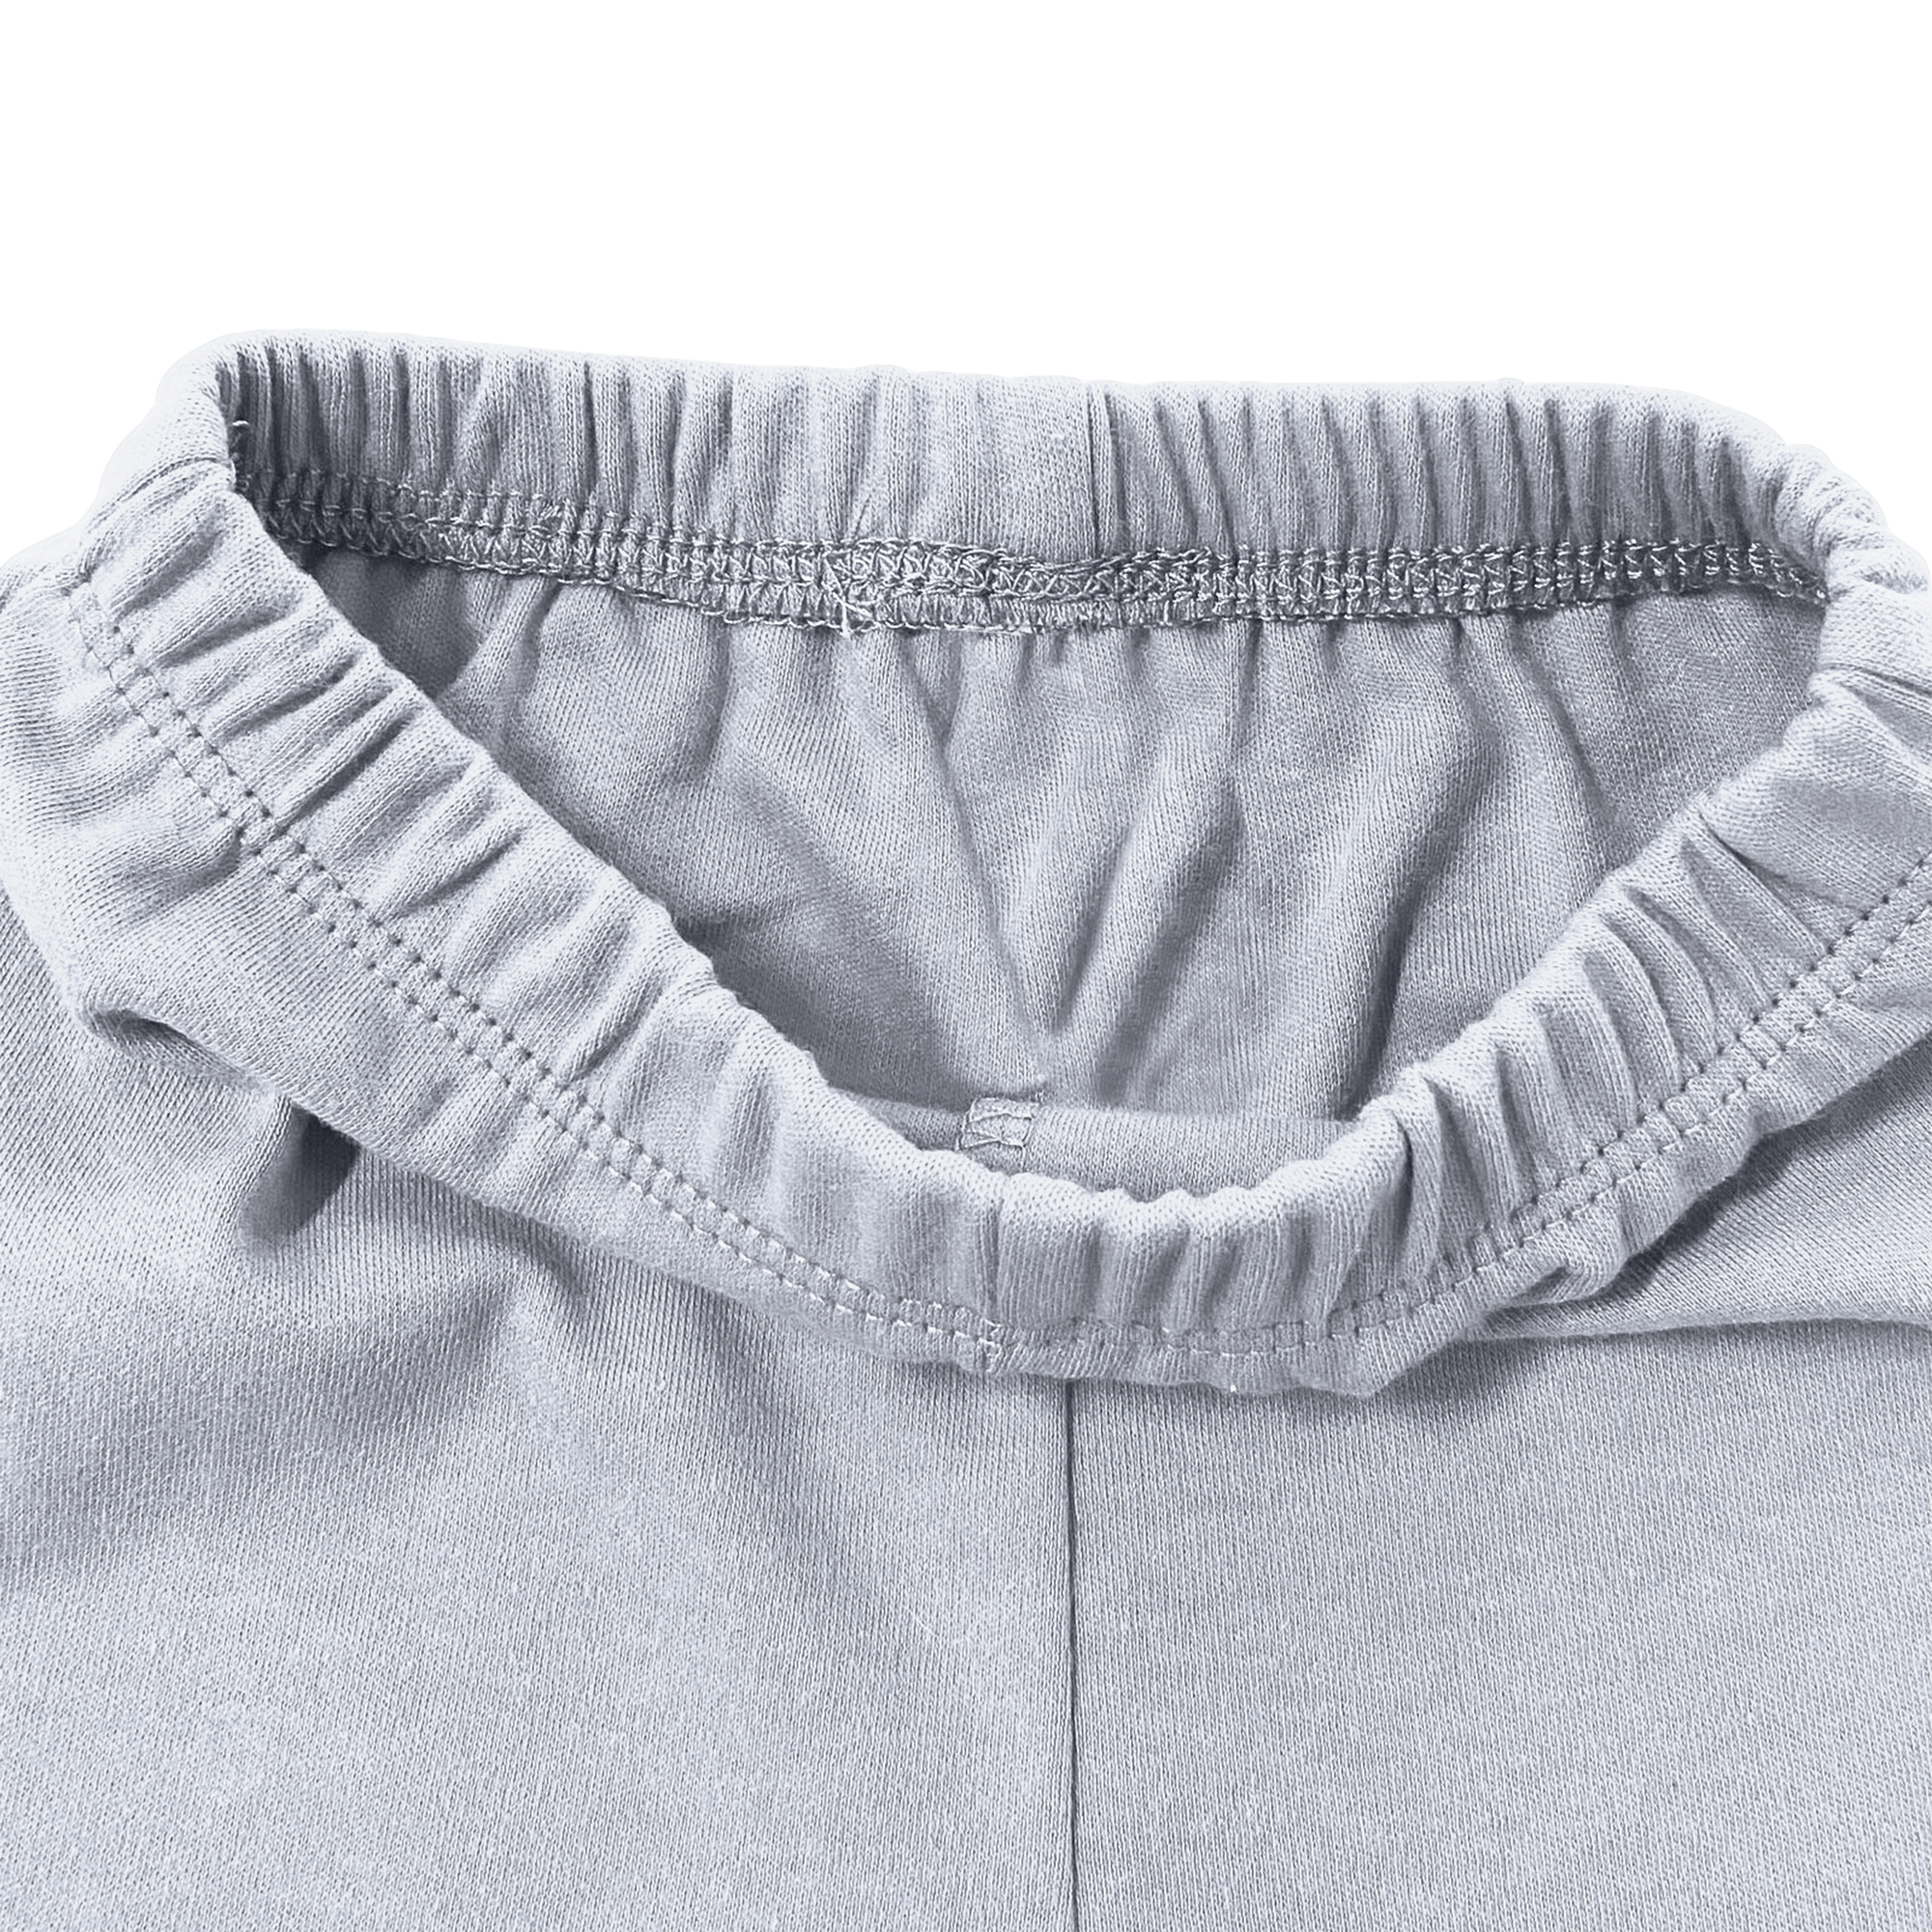 Grey Long Sleeved Baby Onesie & Pant Set